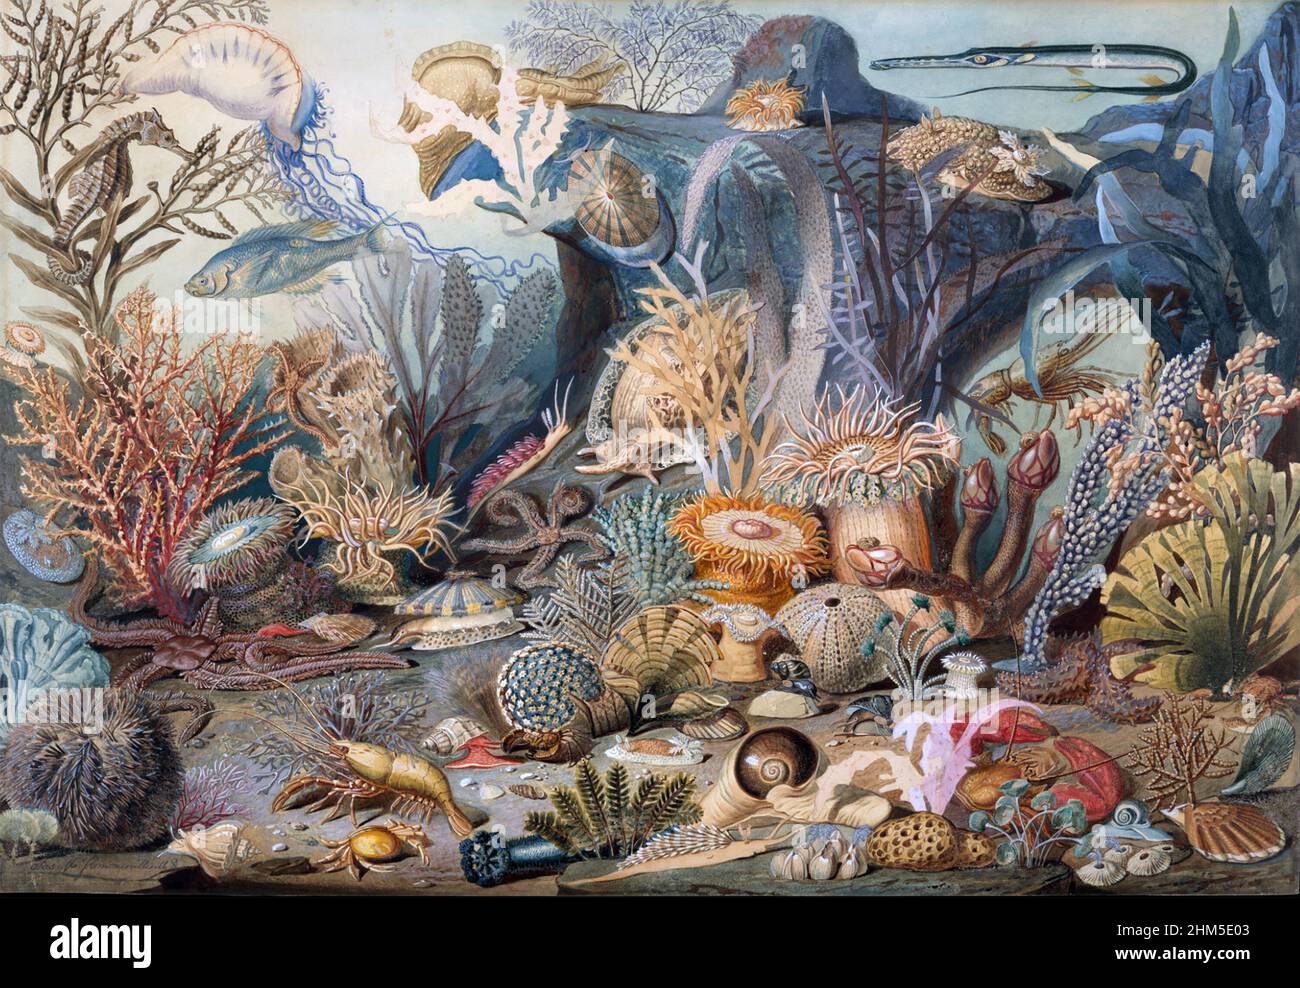 CHRISTIAN SCHUSSELE (1824-1879) amerikanischer Künstler. Druck seines Aquarells Ocean Life, gemalt um 1859. Originalgemälde befindet sich im New York Metropolitan Museum of Art Stockfoto